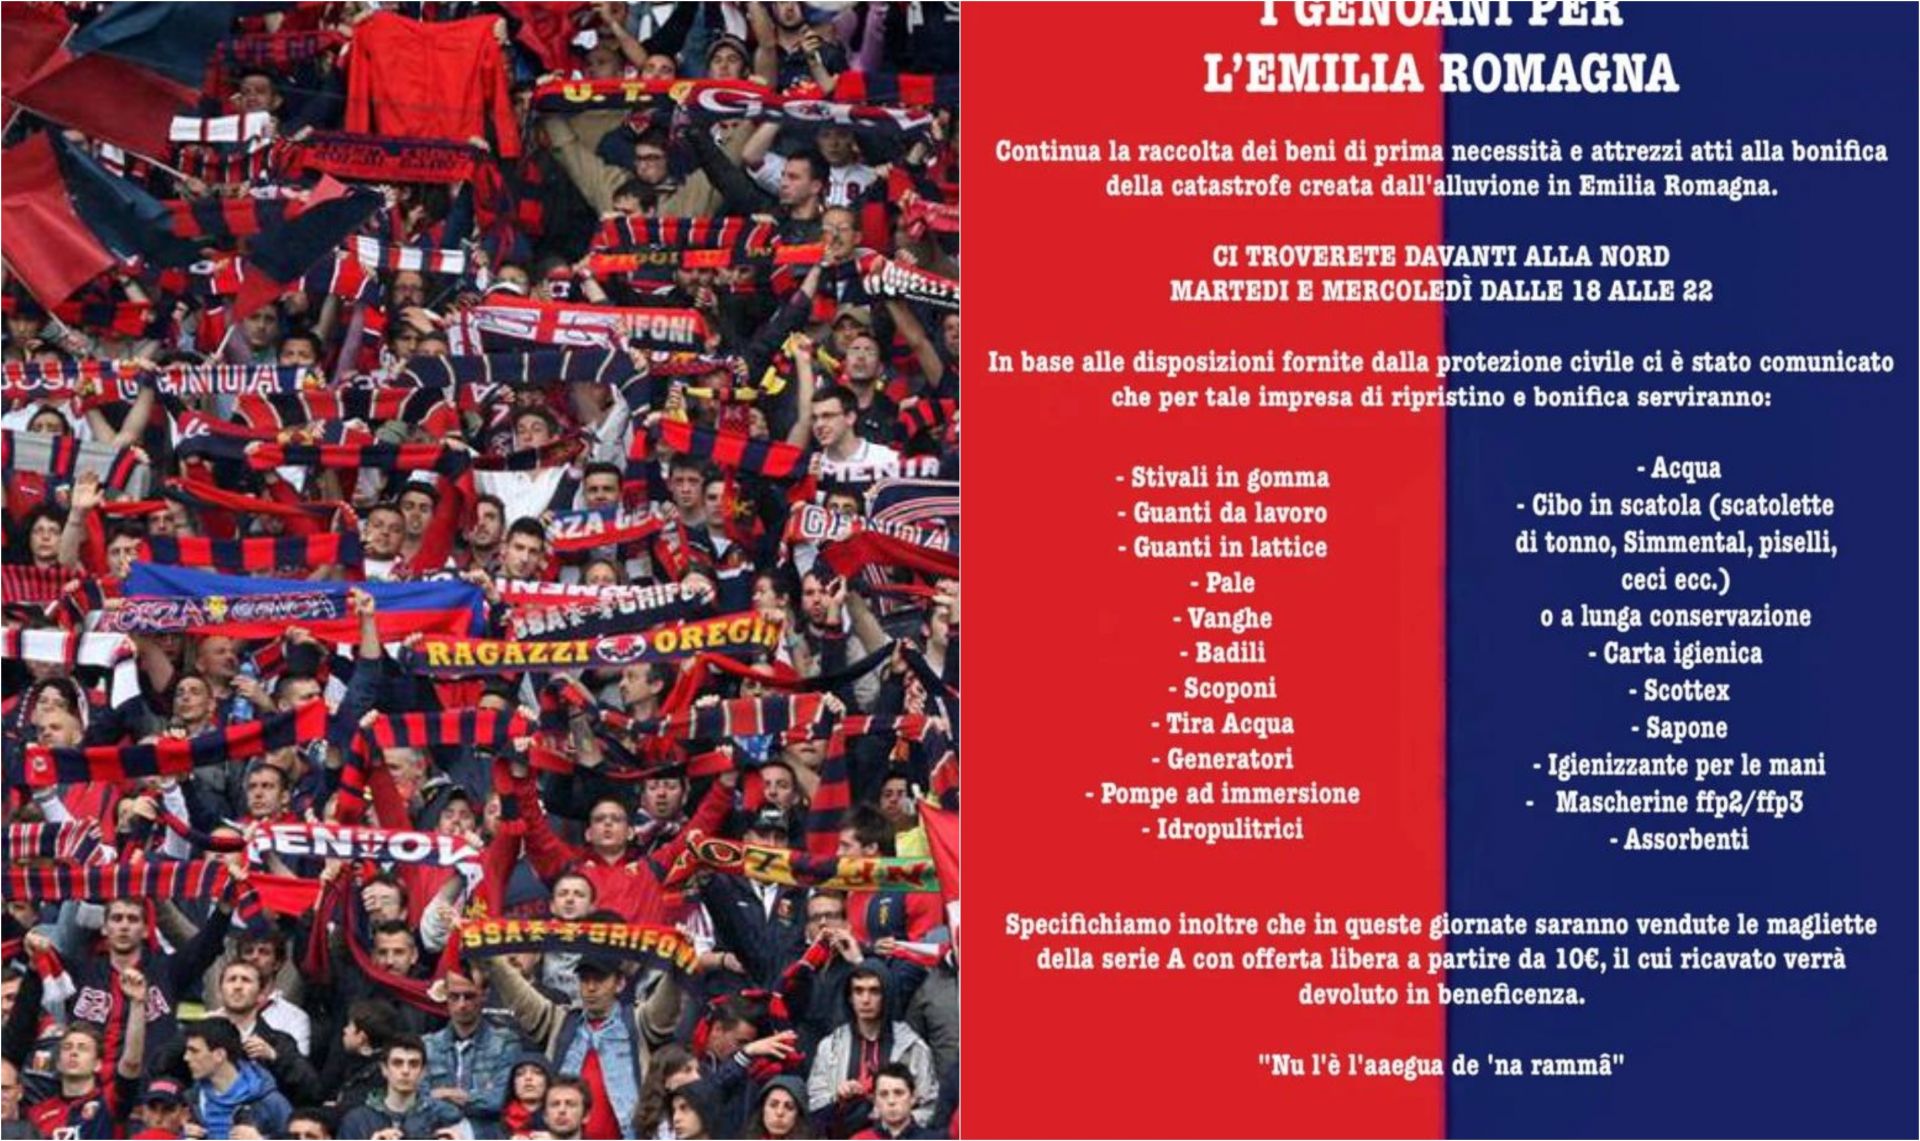 Genoa, prosegue la raccolta benefica per l'Emilia organizzata dai tifosi